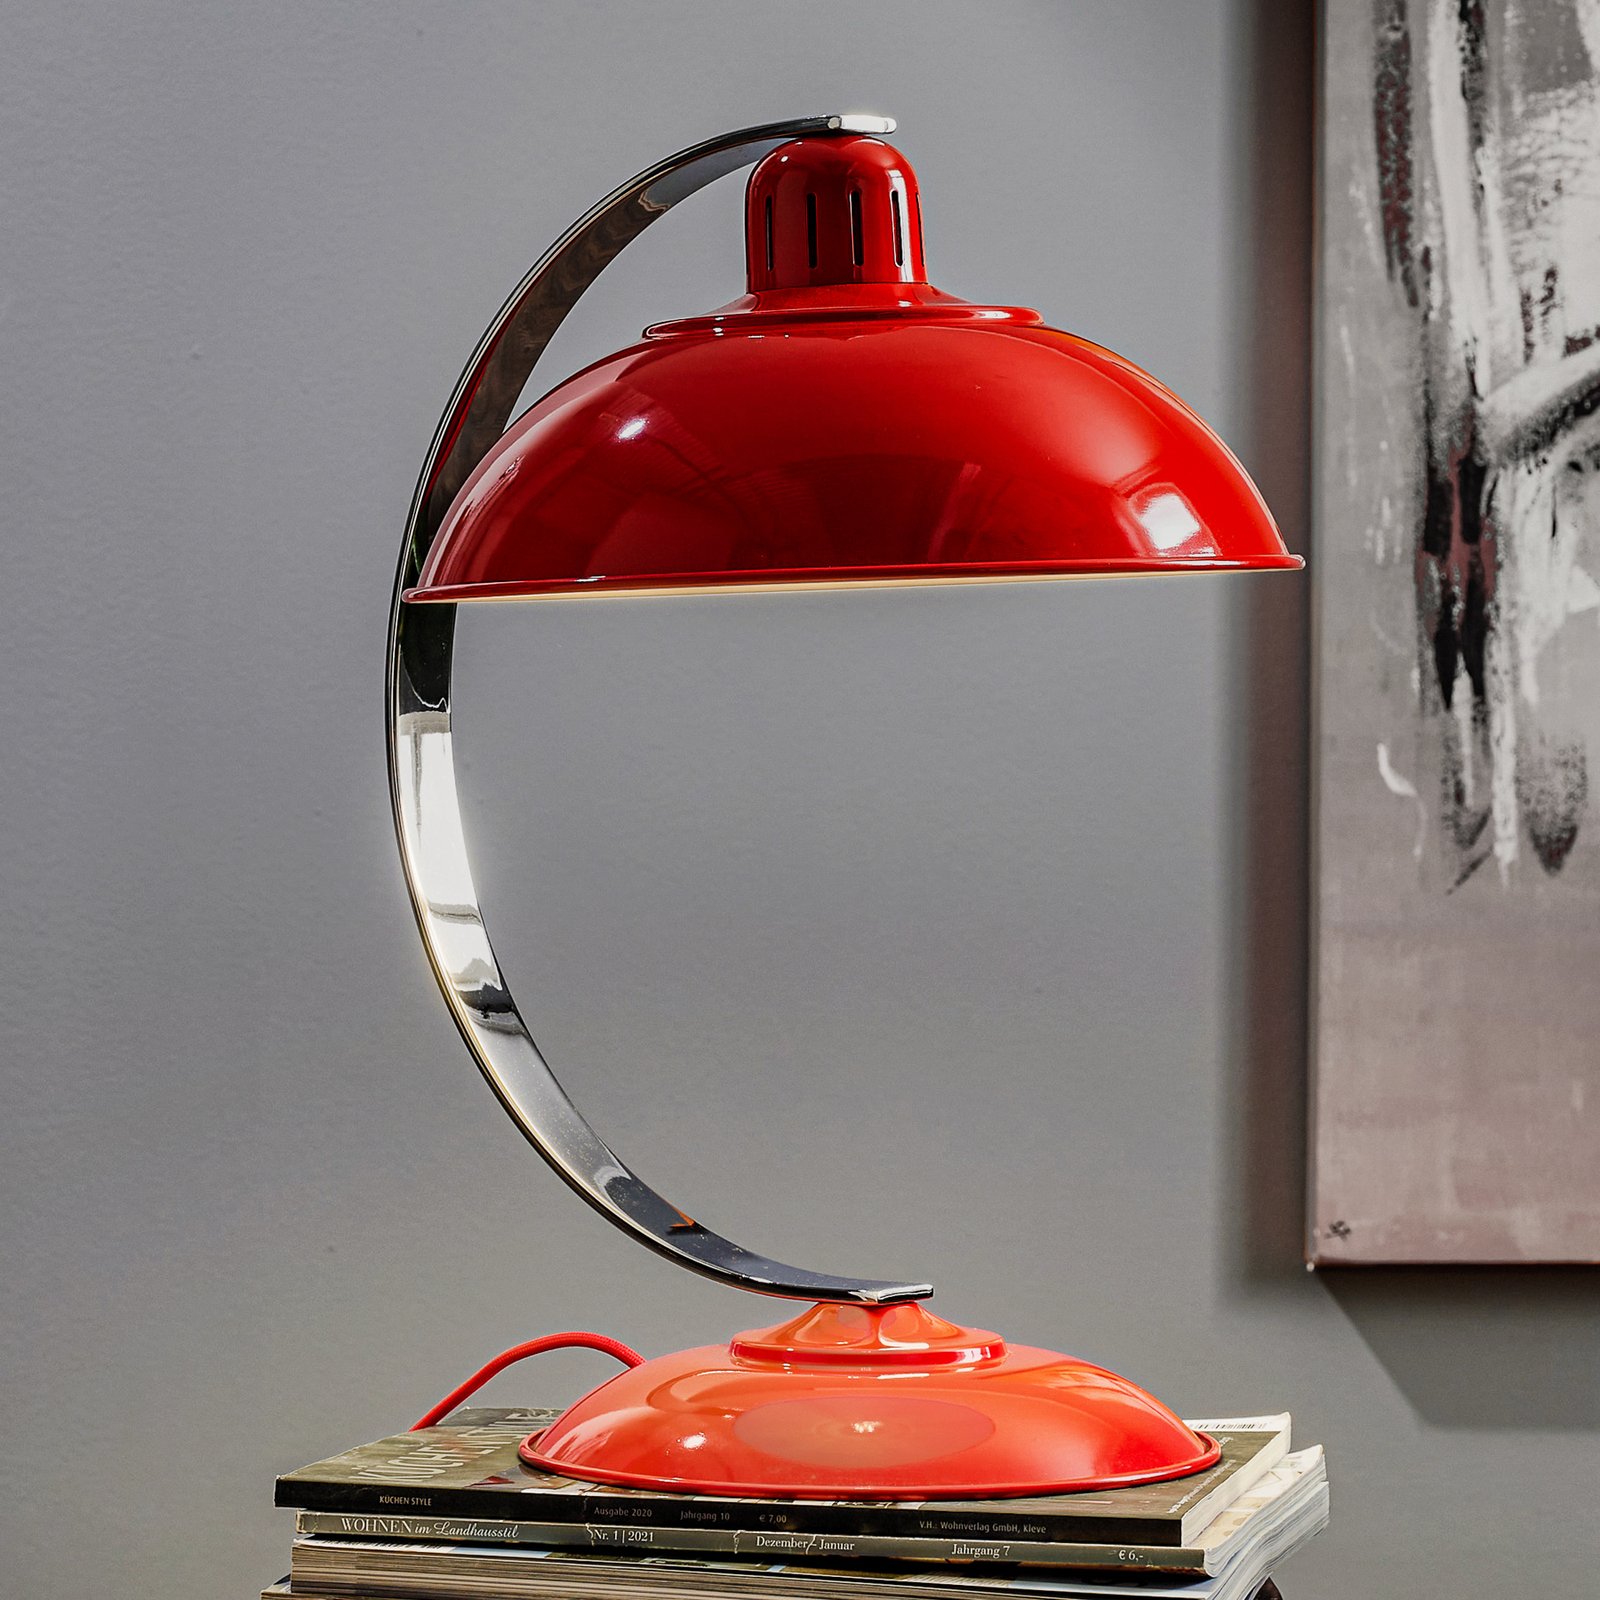 I fräsig röd färg - bordslampan Franklin